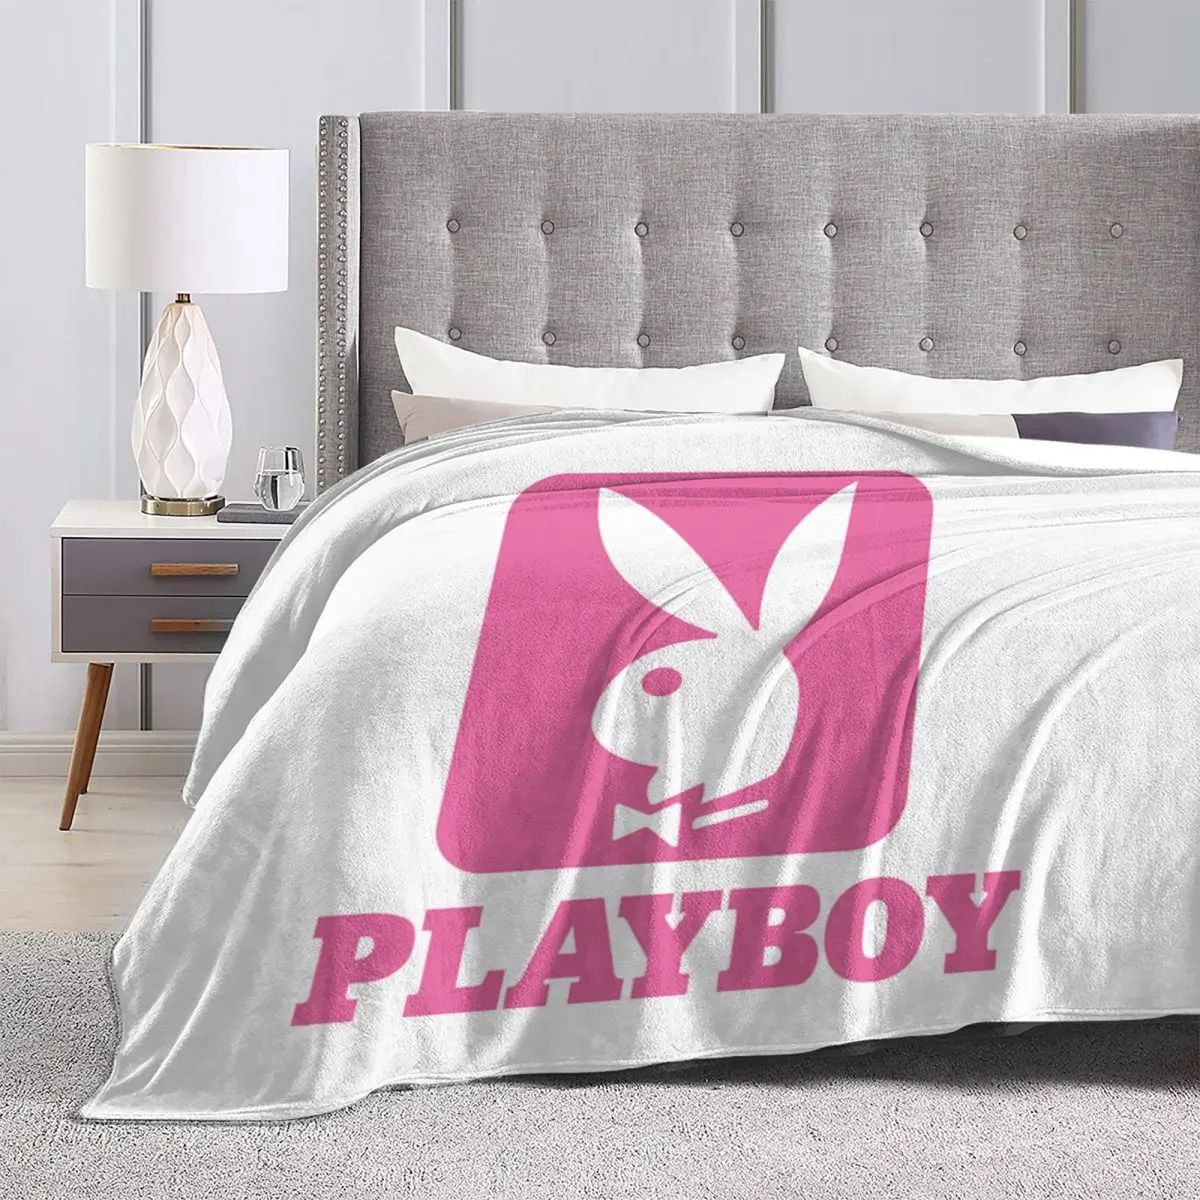 Playboy – couverture de lit, couvre lit, Plaid, couettes, Kawaii, 2899 |  AliExpress